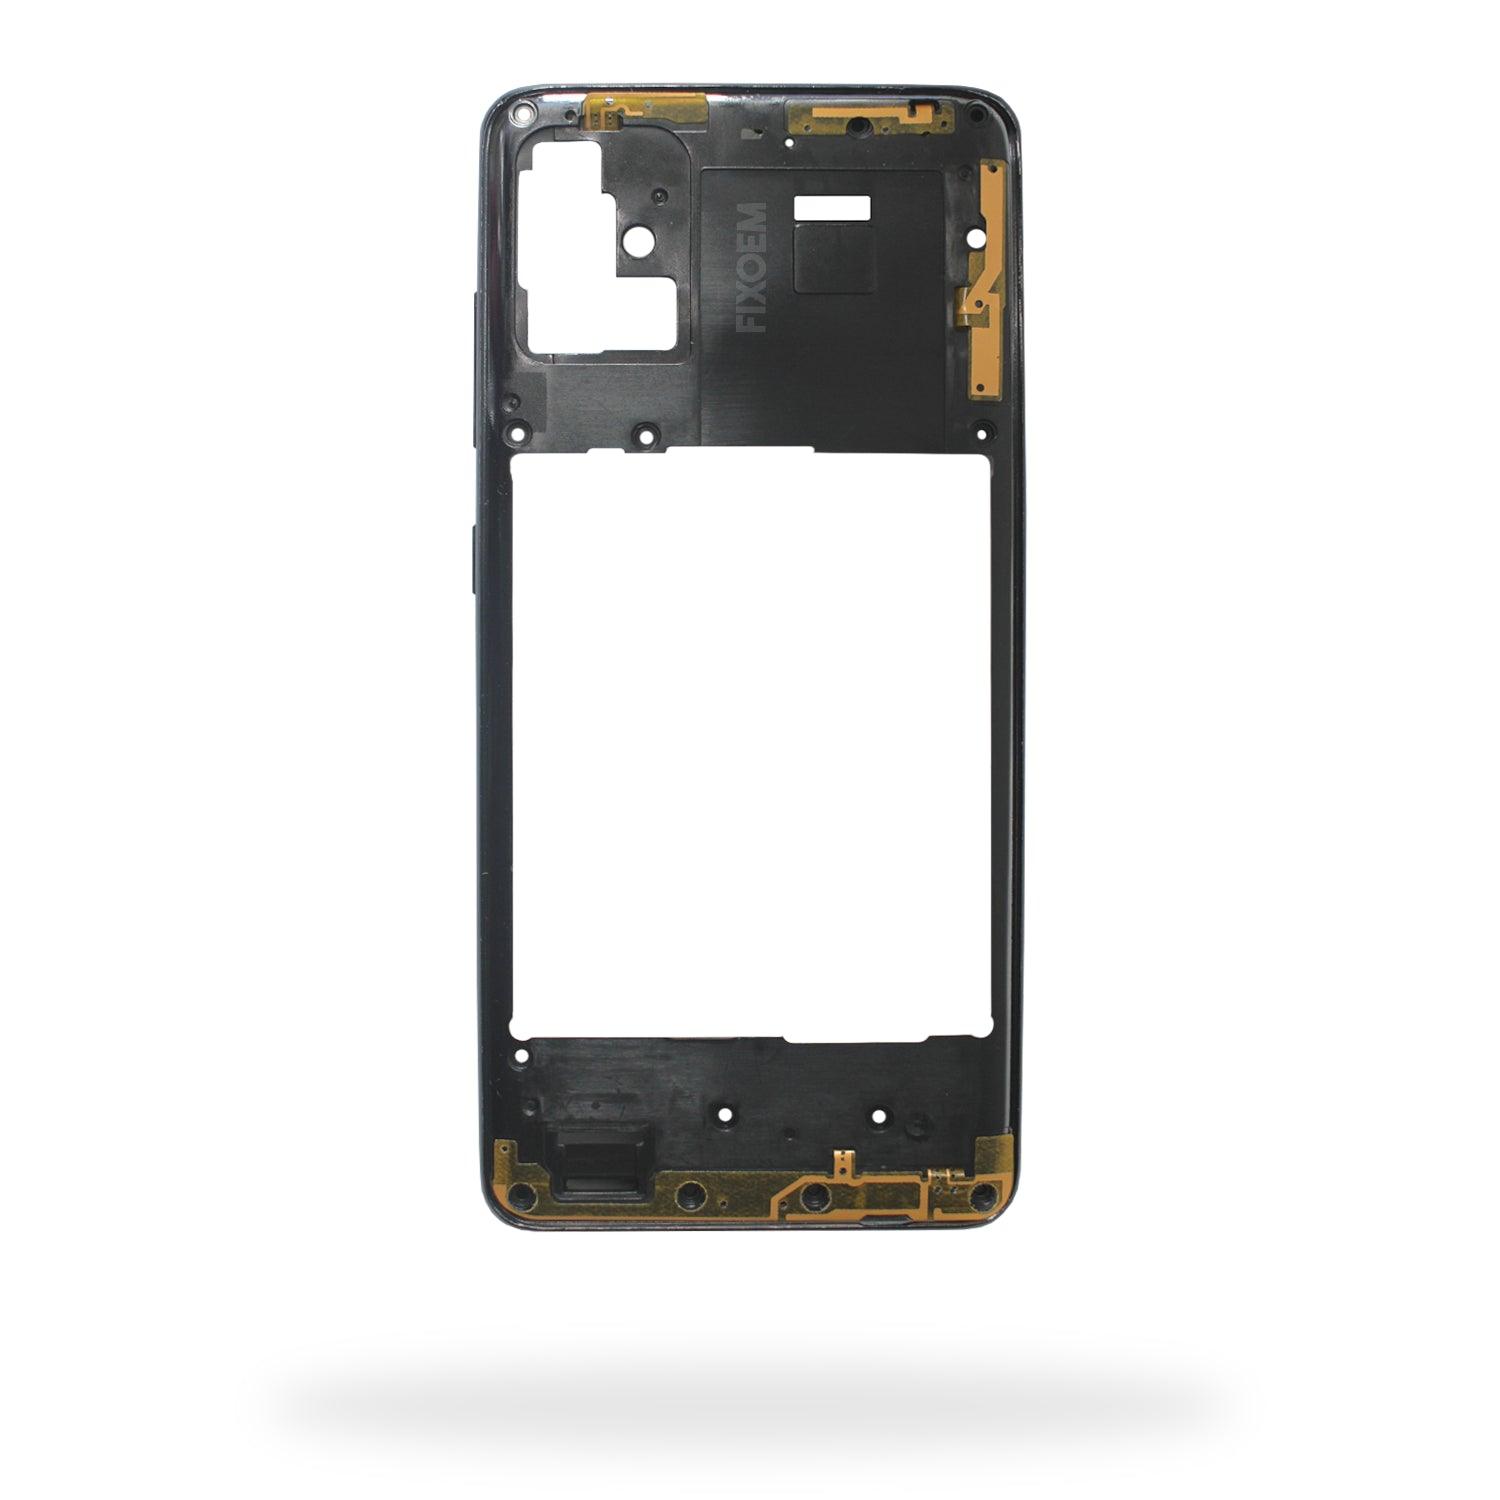 Marco Samsung A51 A515A51 A515SM-A515F a solo $ 80.00 Refaccion y puestos celulares, refurbish y microelectronica.- FixOEM